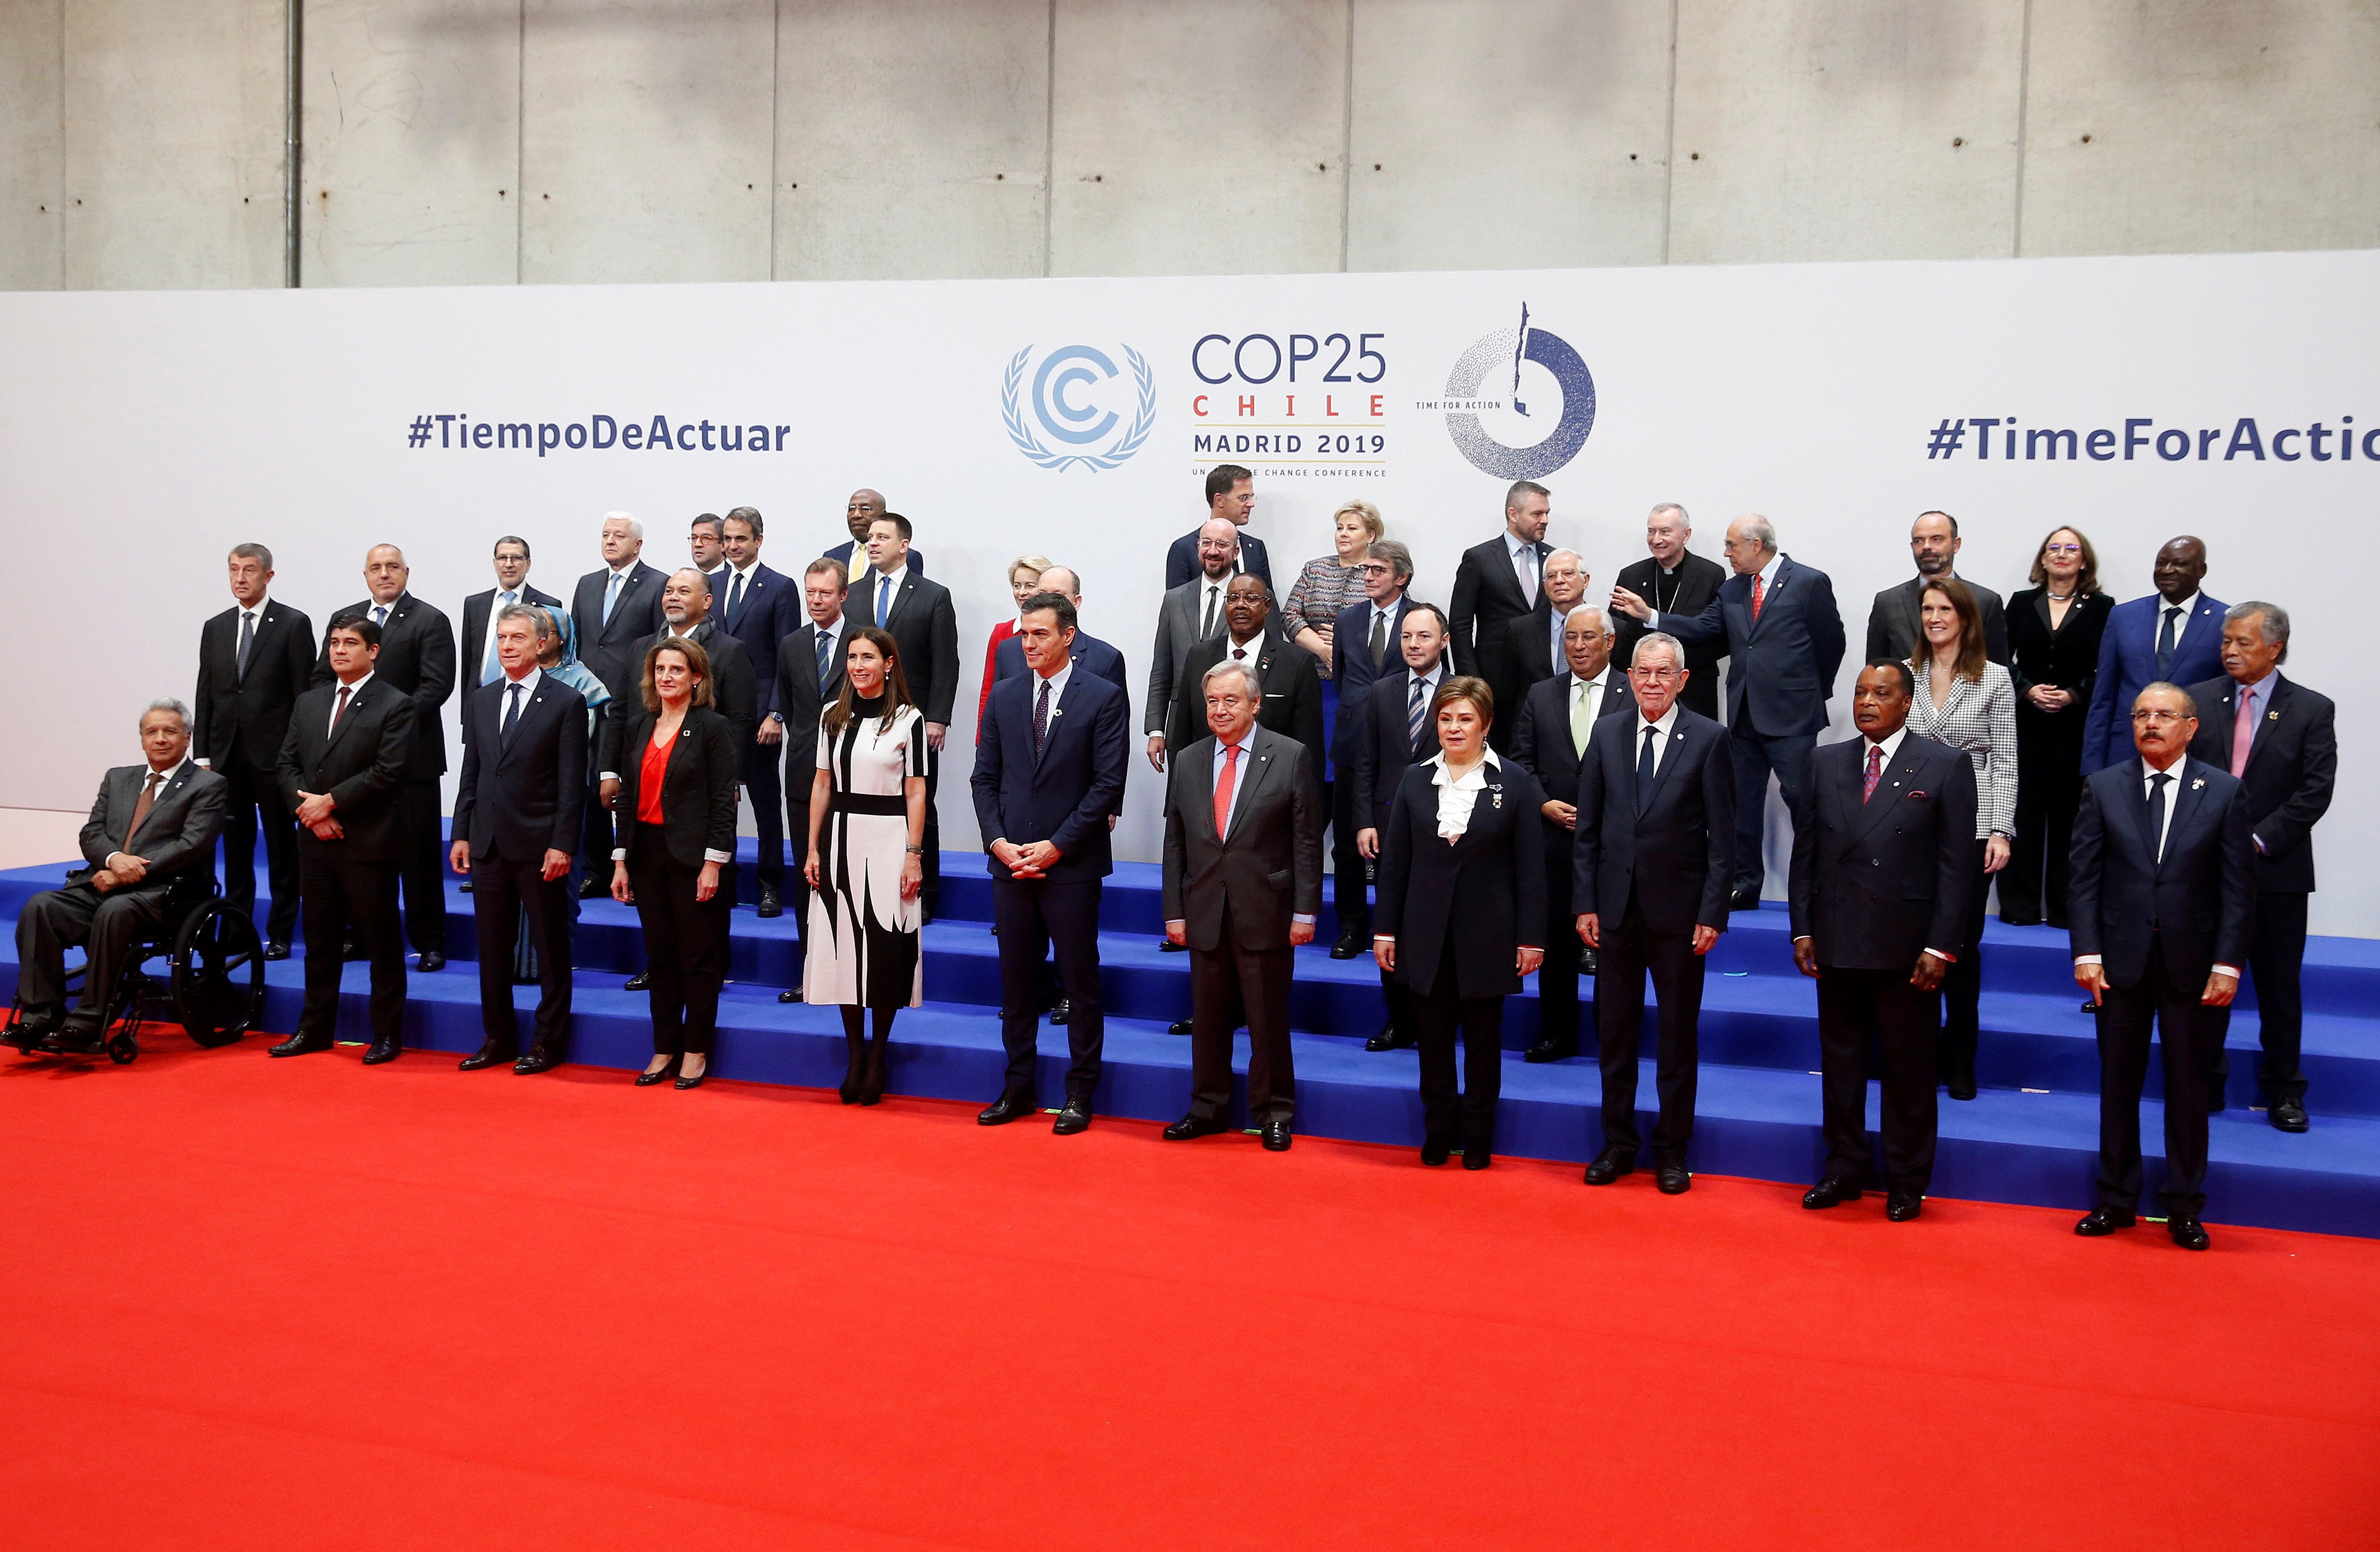 La COP25 engega amb una crida per evitar "un desastre catastròfic"